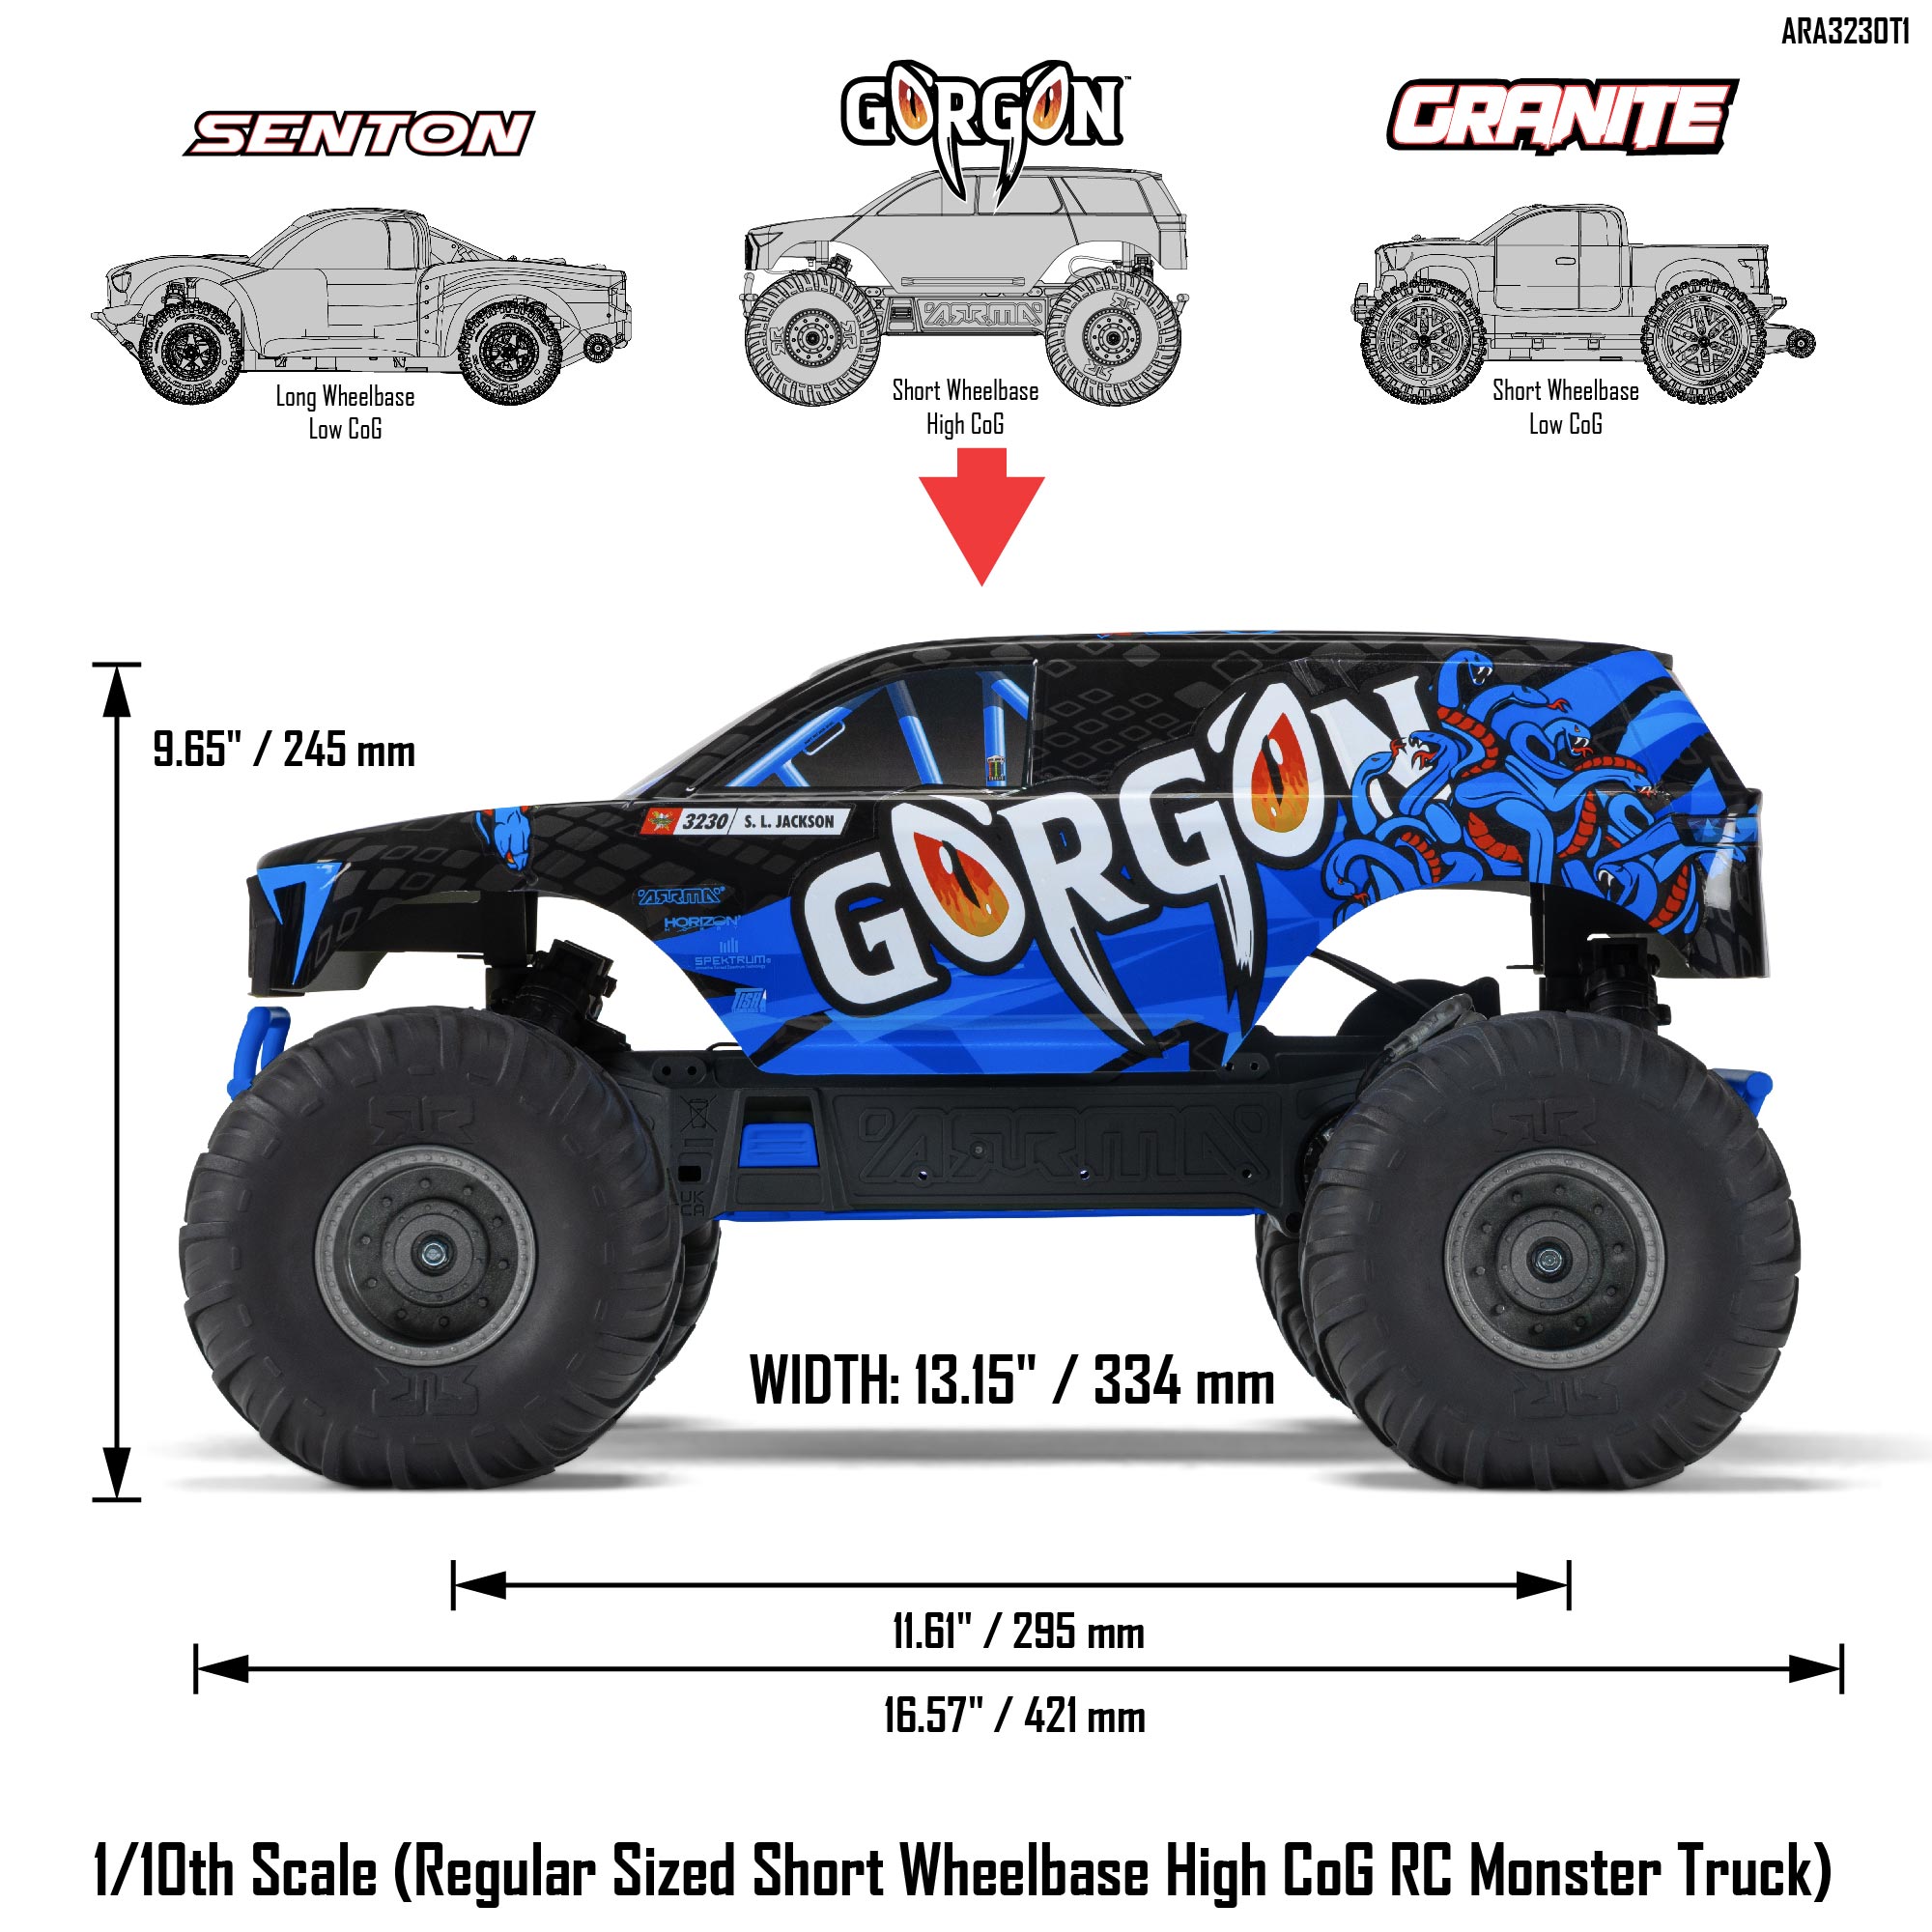 1/10 GORGON 4X2 MEGA 550 Brushed Monster Truck RTR